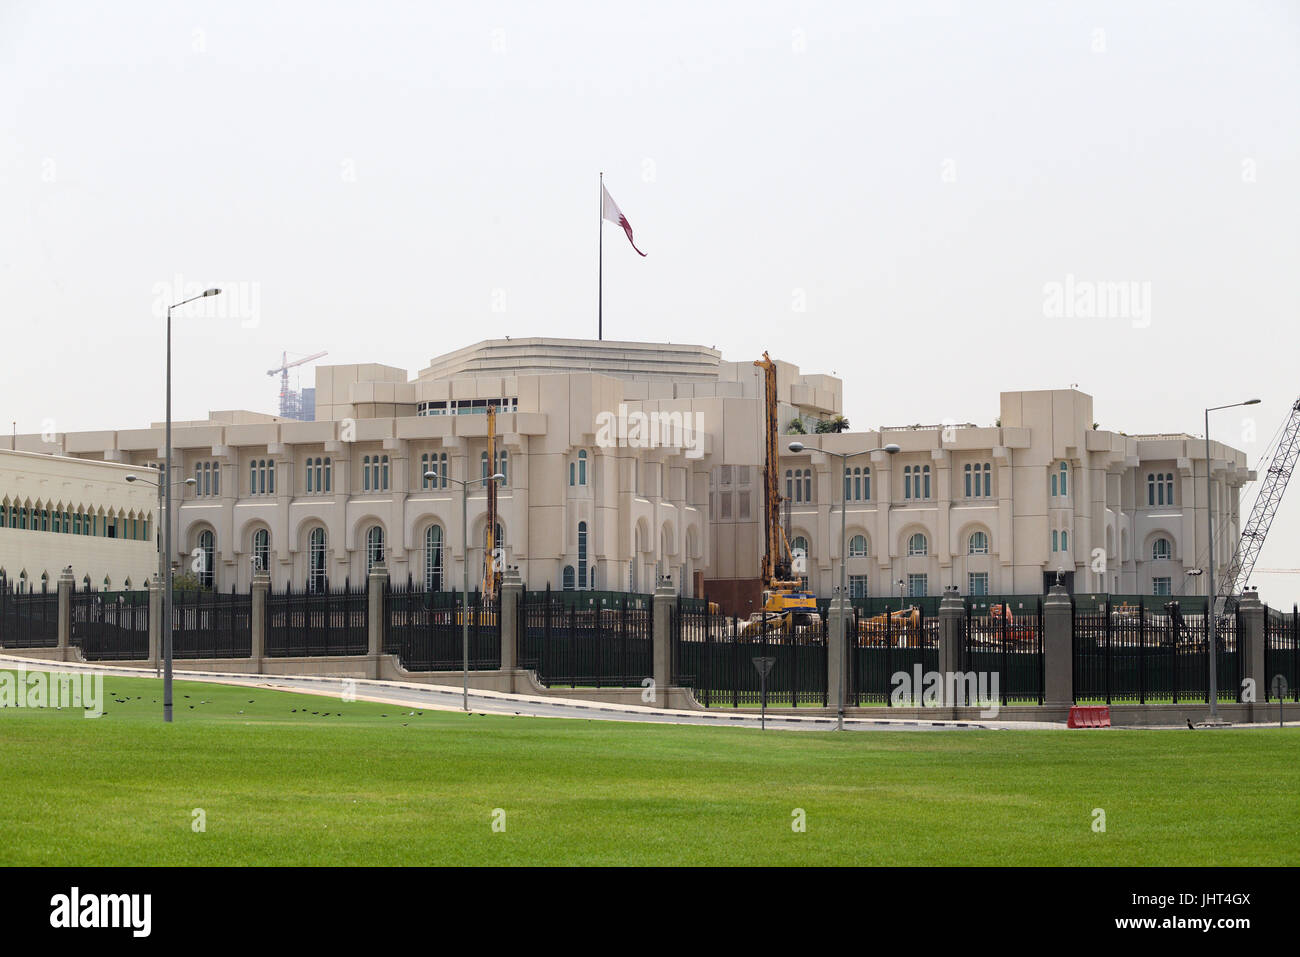 DOHA, Katar - 15. Juli 2017: The Emiri Diwan Palast in zentralen Doha. Scheich Tamim bin Hamad al-Thani, Emir von Katar, traf Jean-Yves Le Drian, der Außenminister von Frankreich, in der katarischen Hauptstadt heute zu die GCC-Krise zu diskutieren. Stockfoto